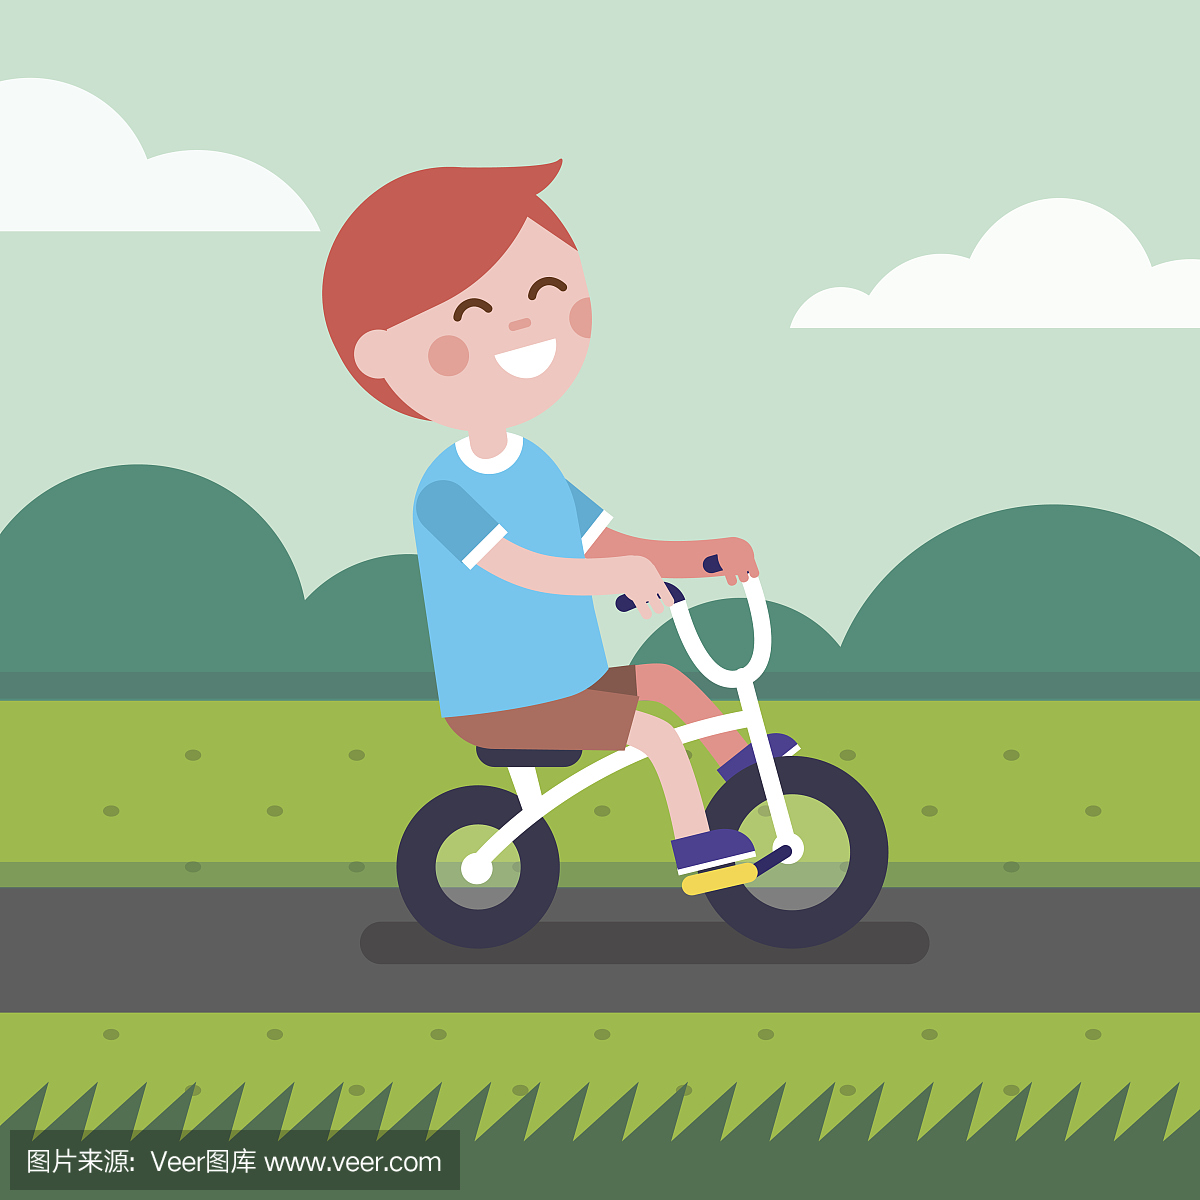 小男孩孩子骑自行车在公园自行车道上